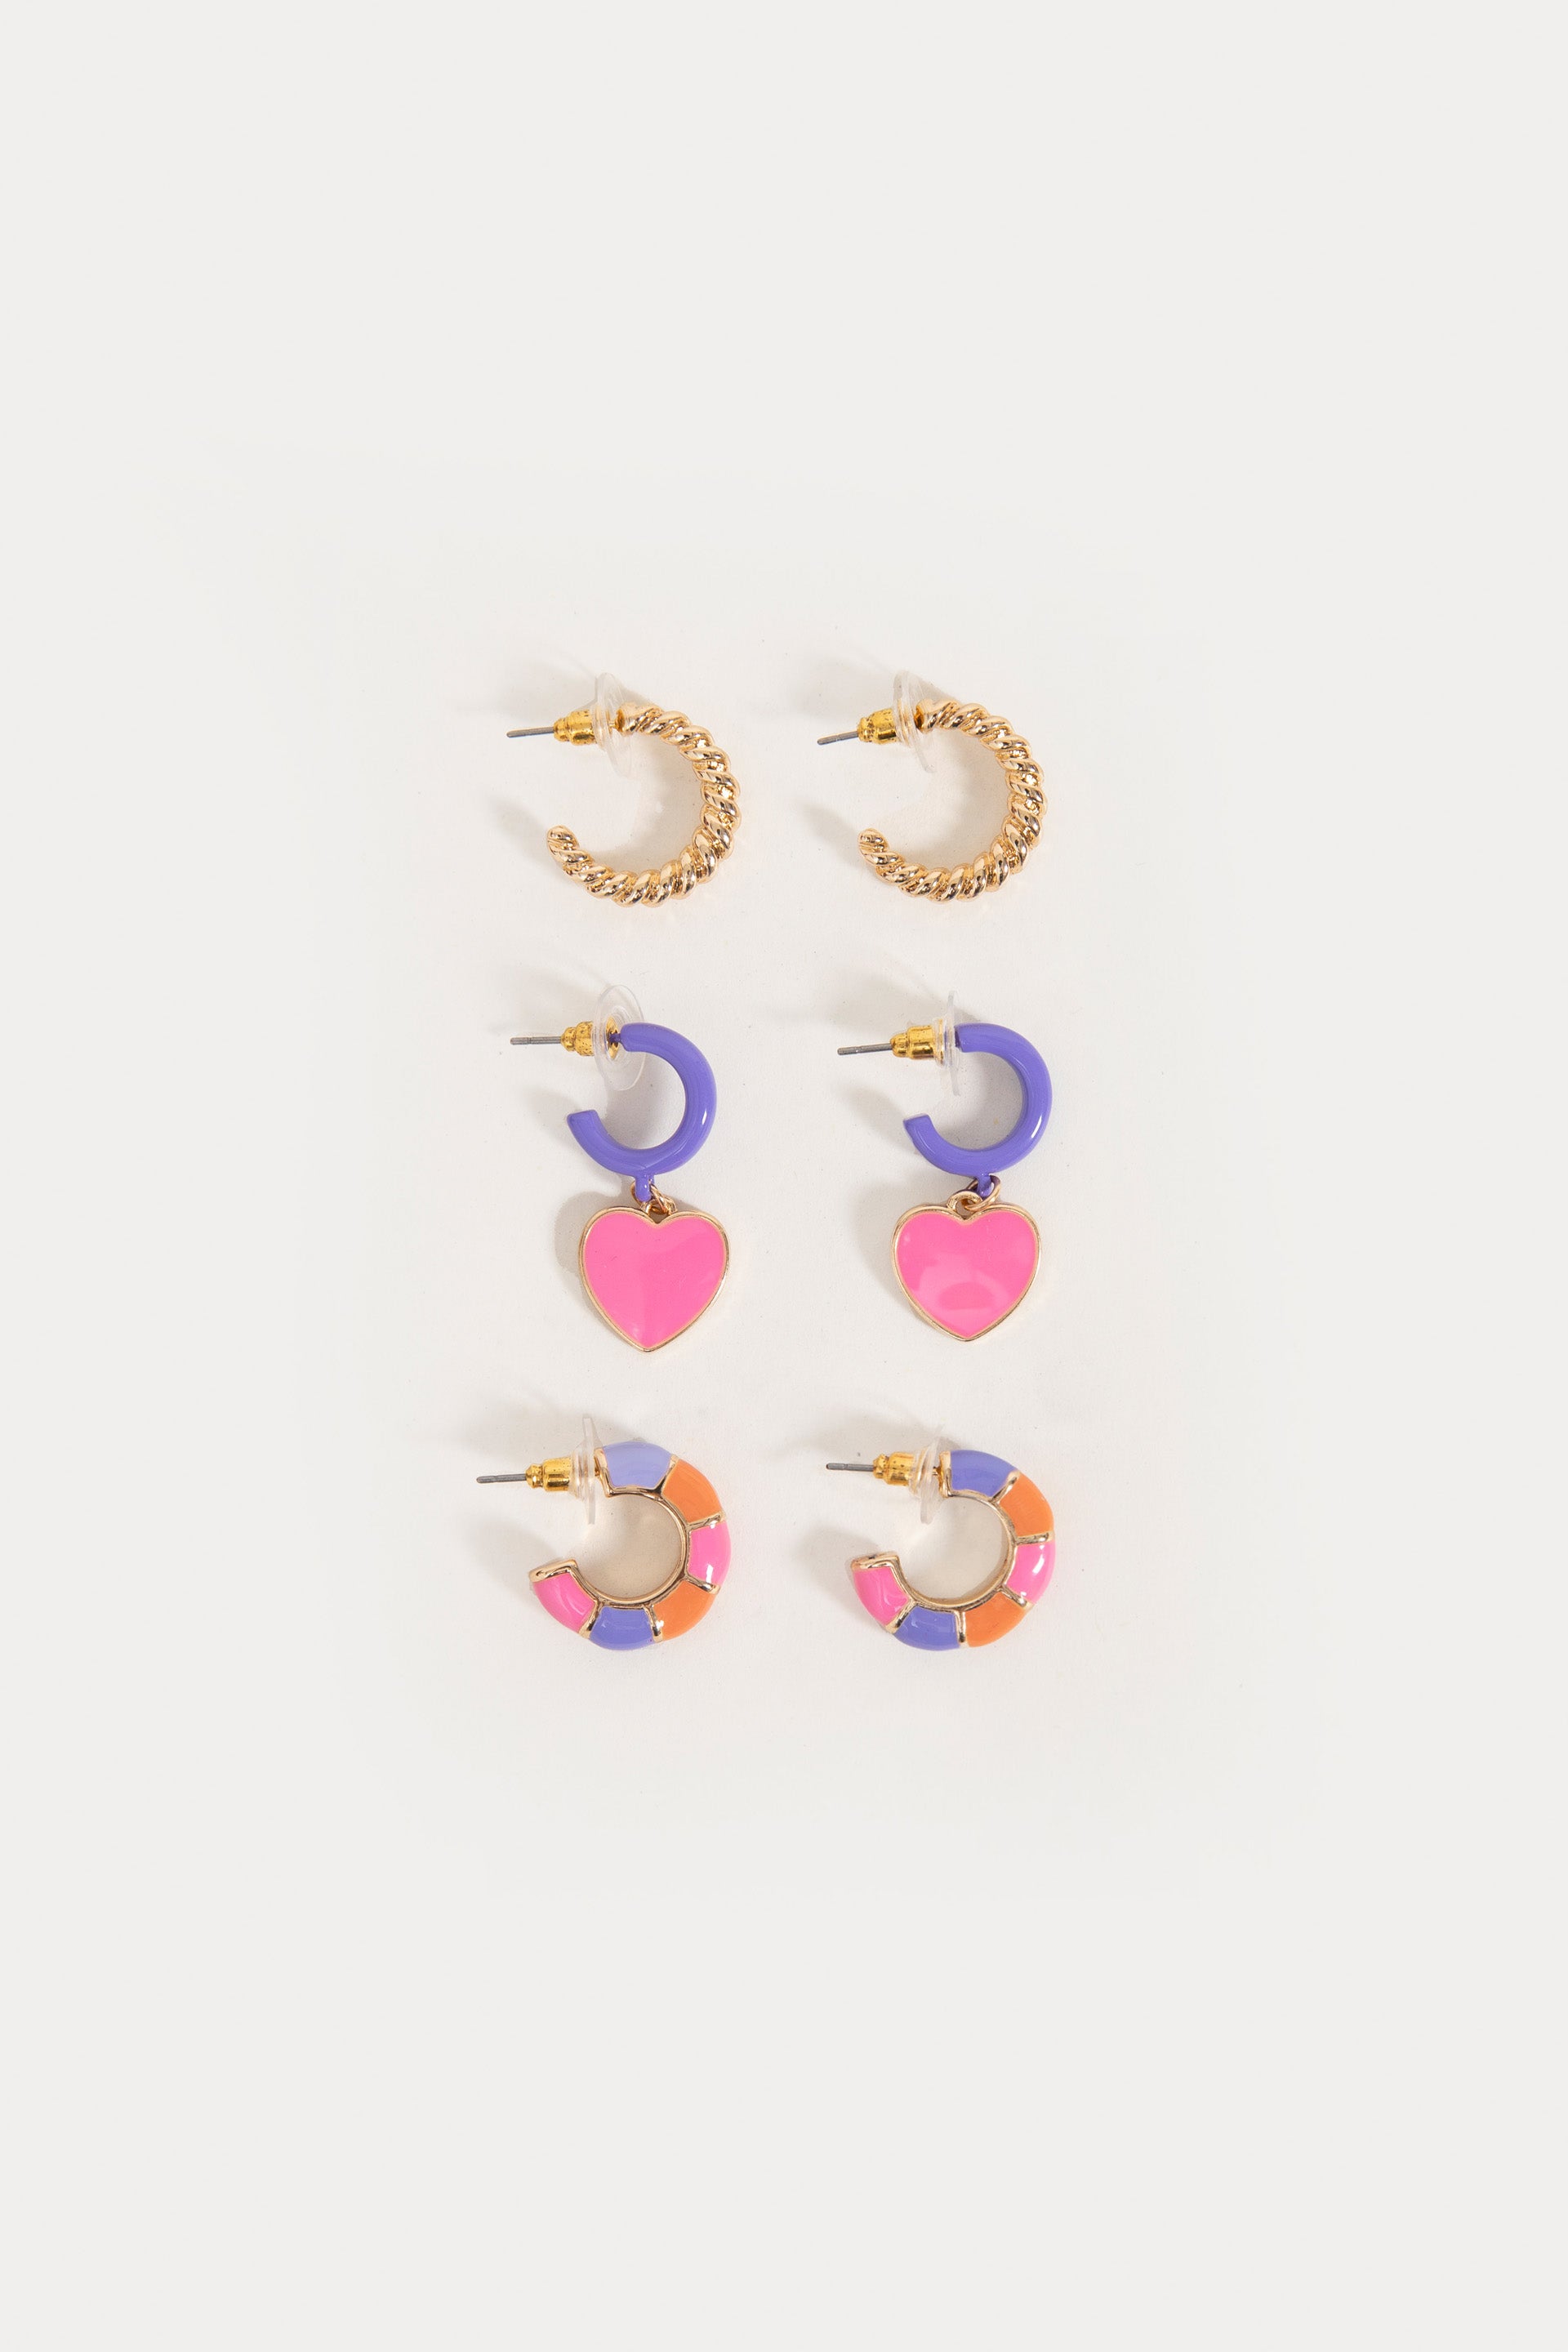 Colorful earrings pack